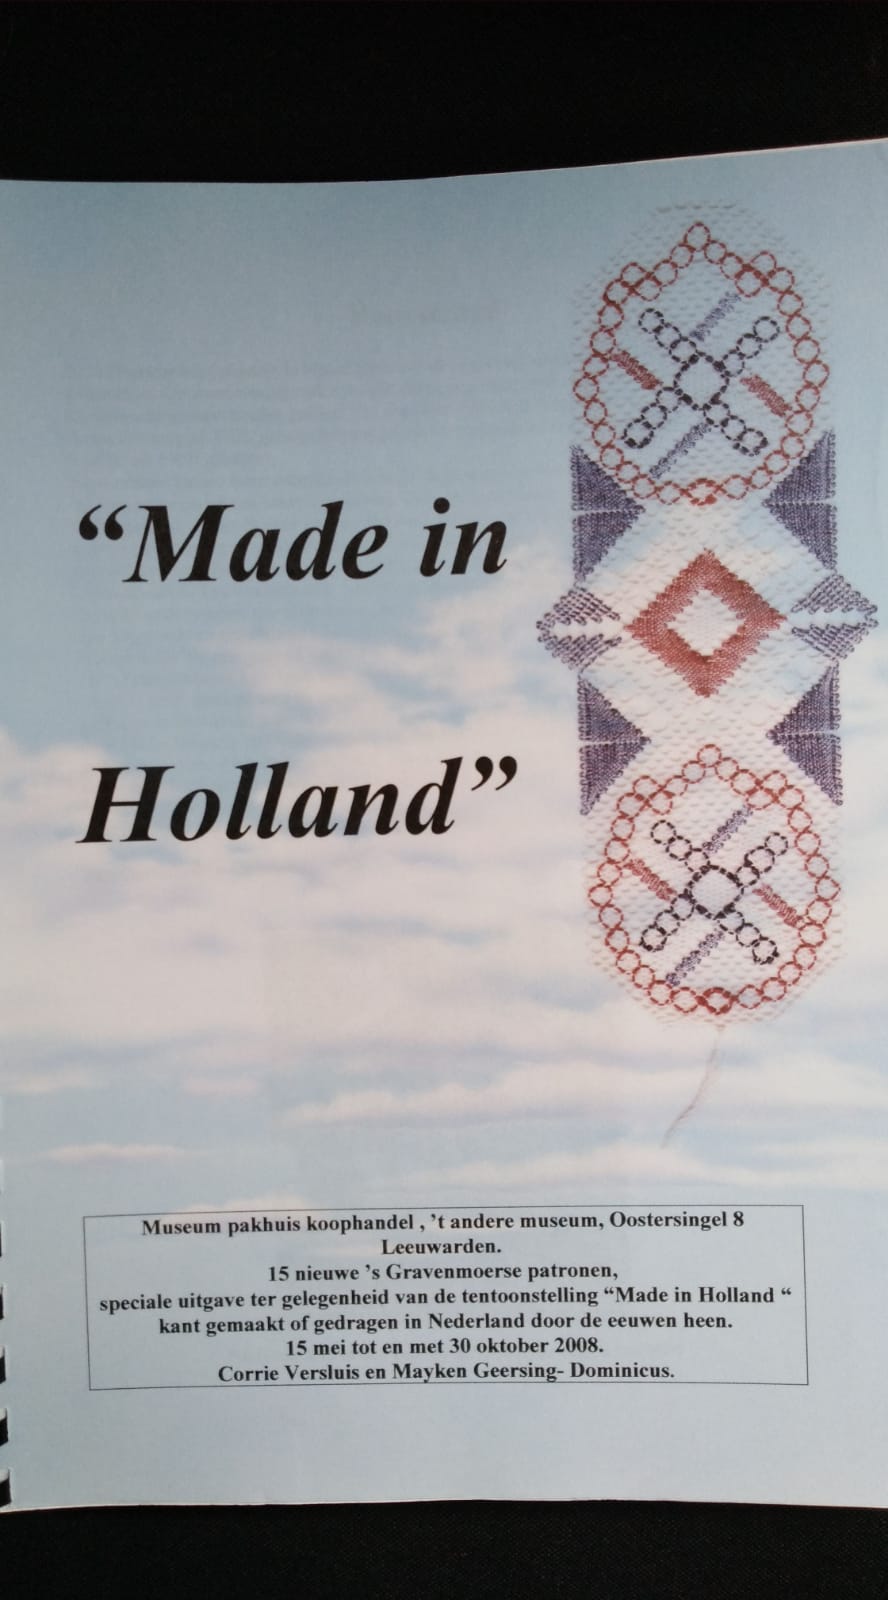 GESUCHT! Made in Holland von Corrie Versluis